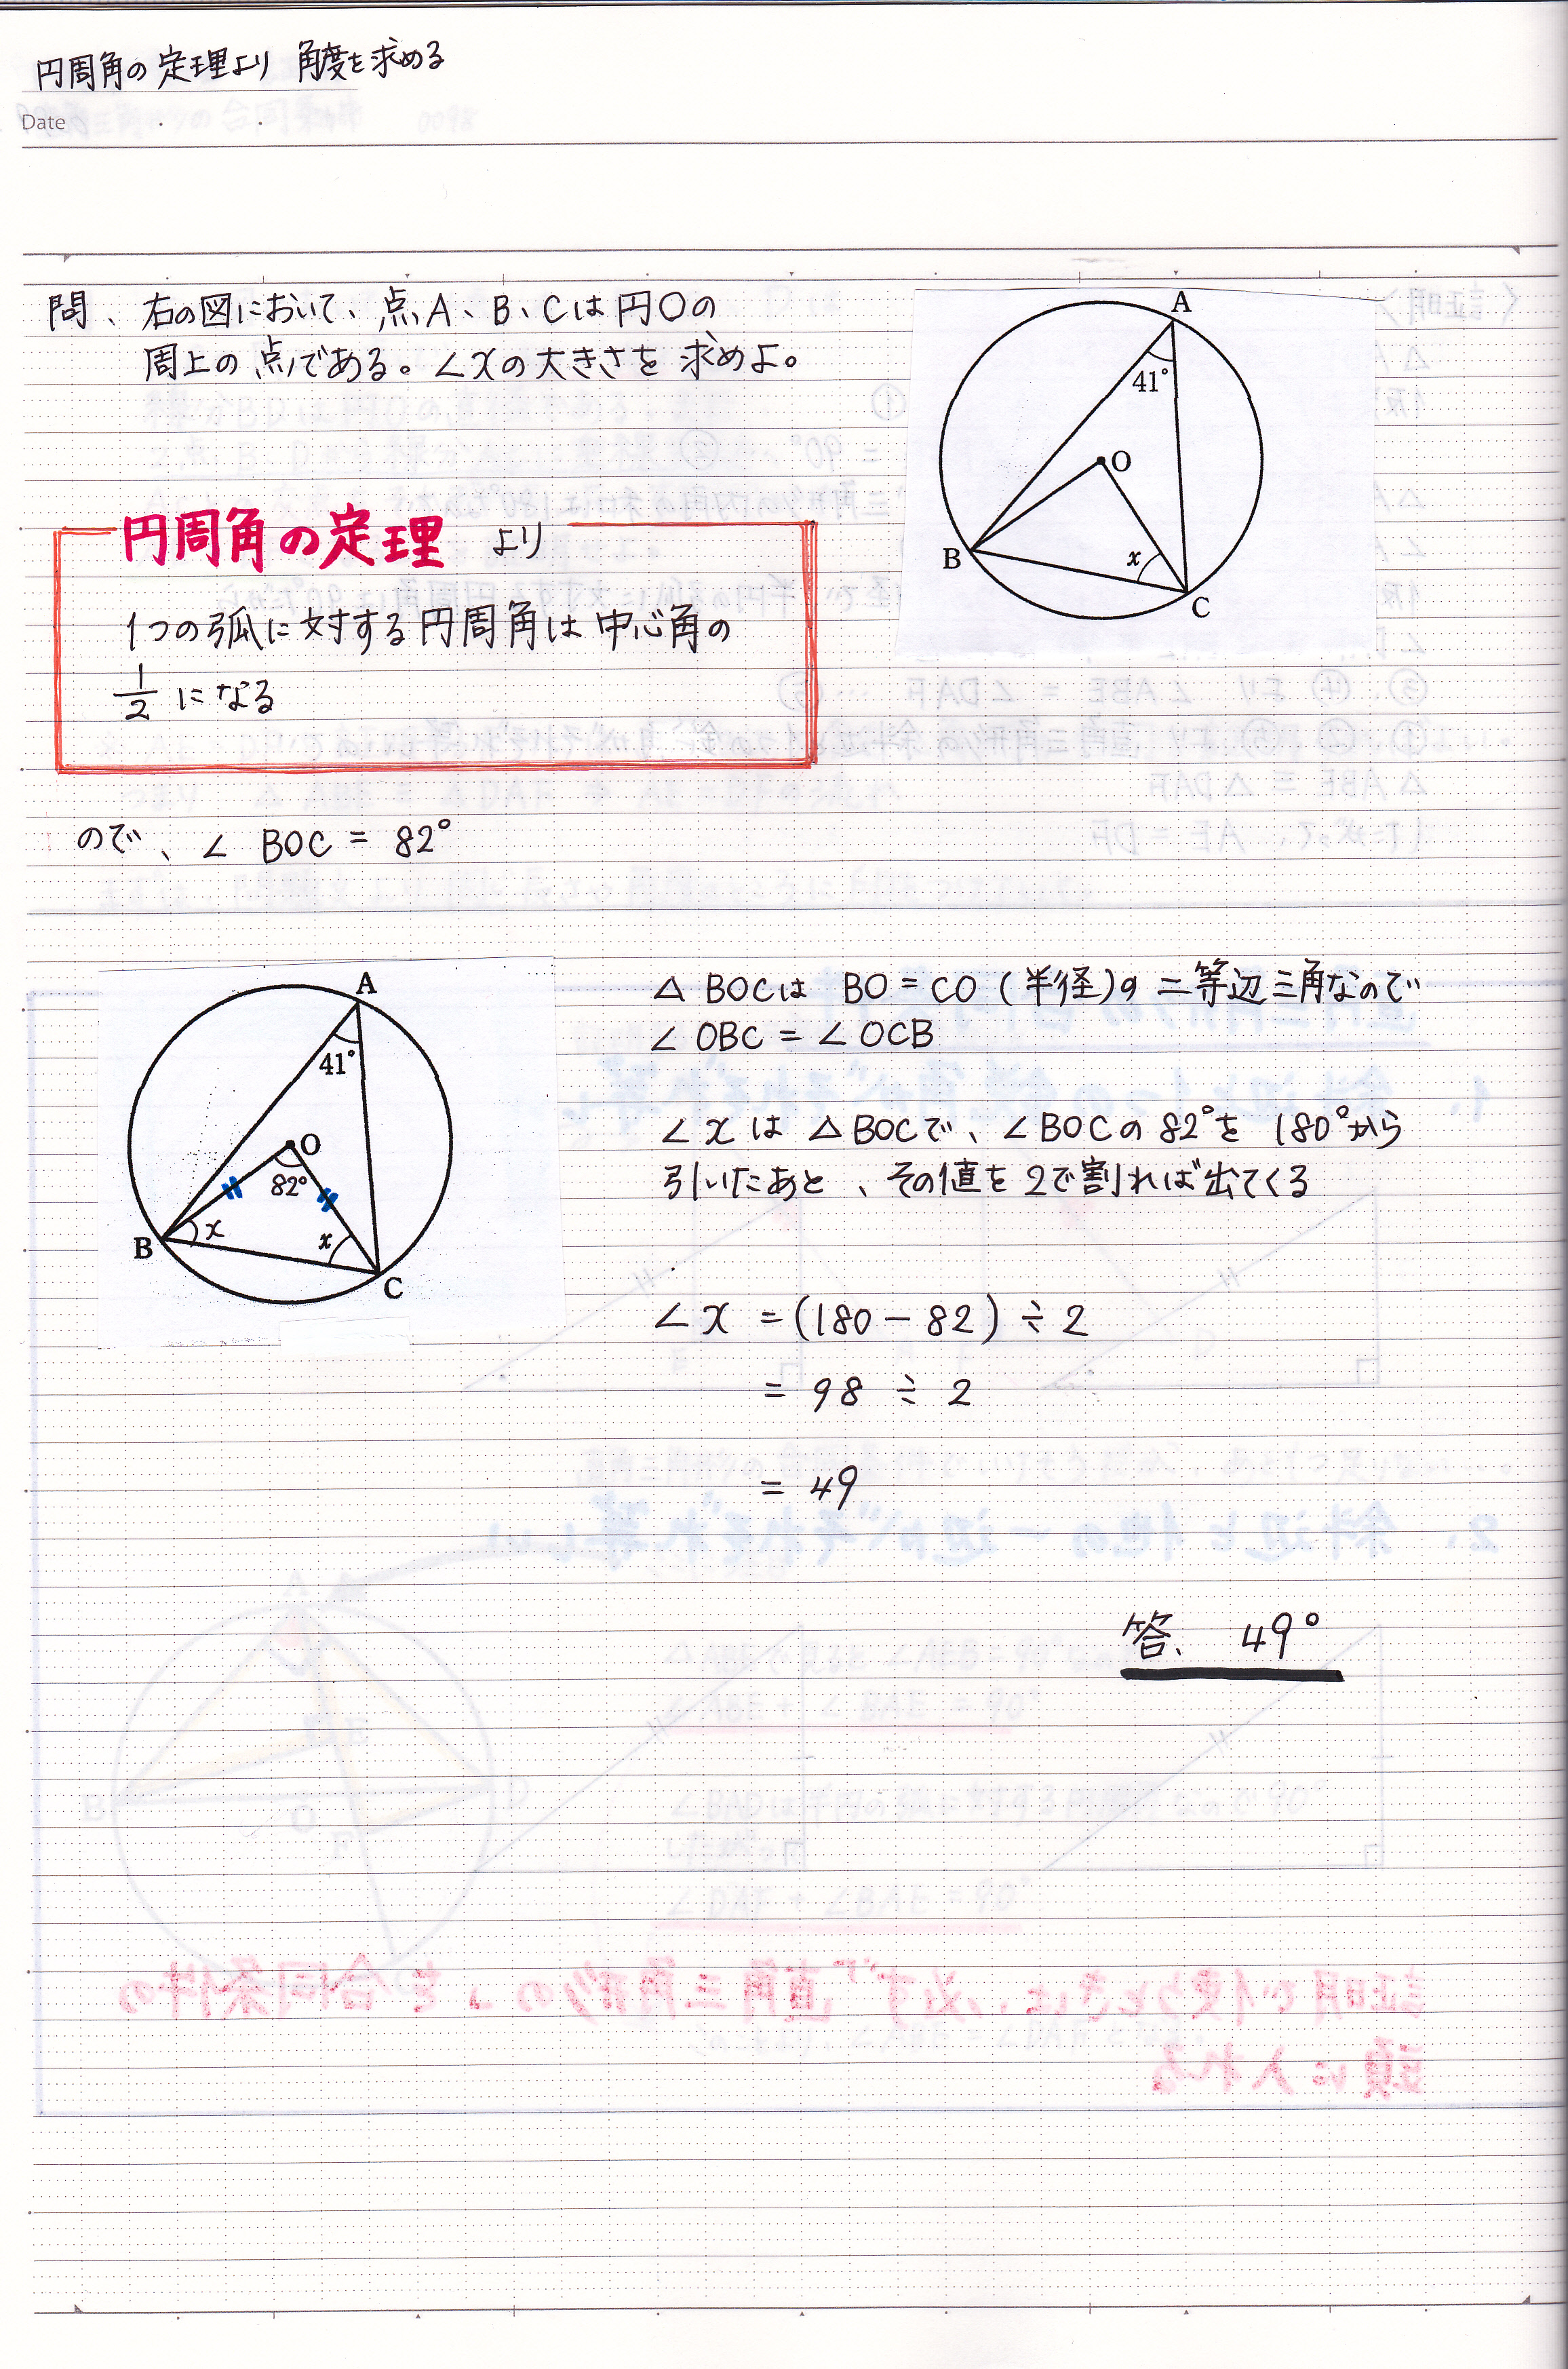 円周角の定理を使って角度を求める問題の解き方 現役塾講師のわかりやすい中学数学の解き方